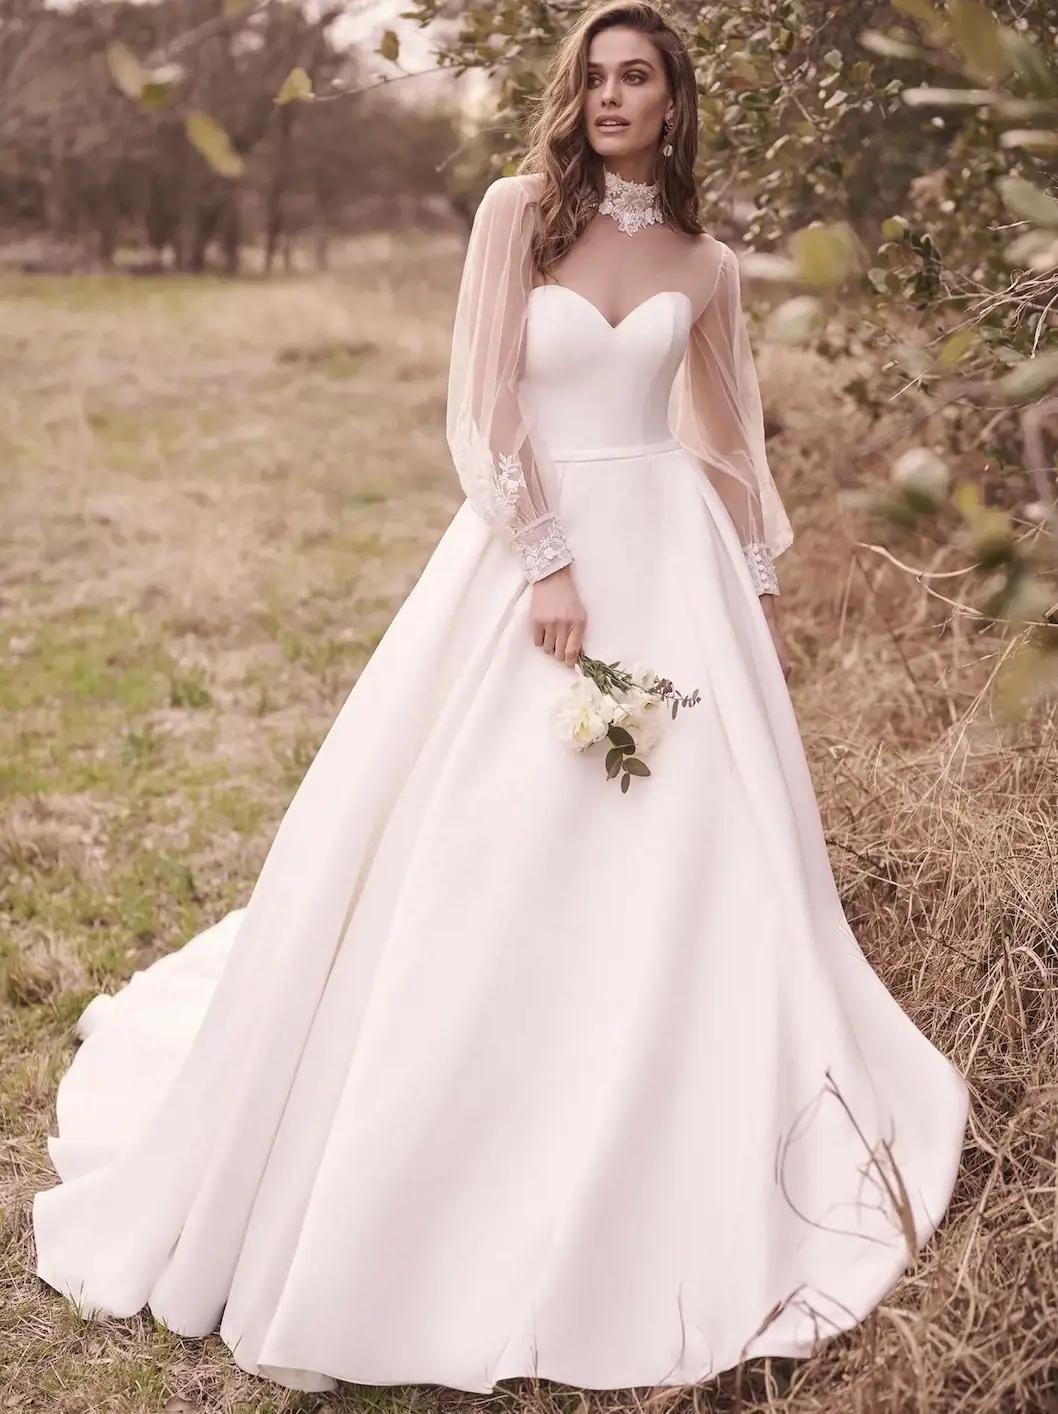 Minimalist Wedding Dresses Image